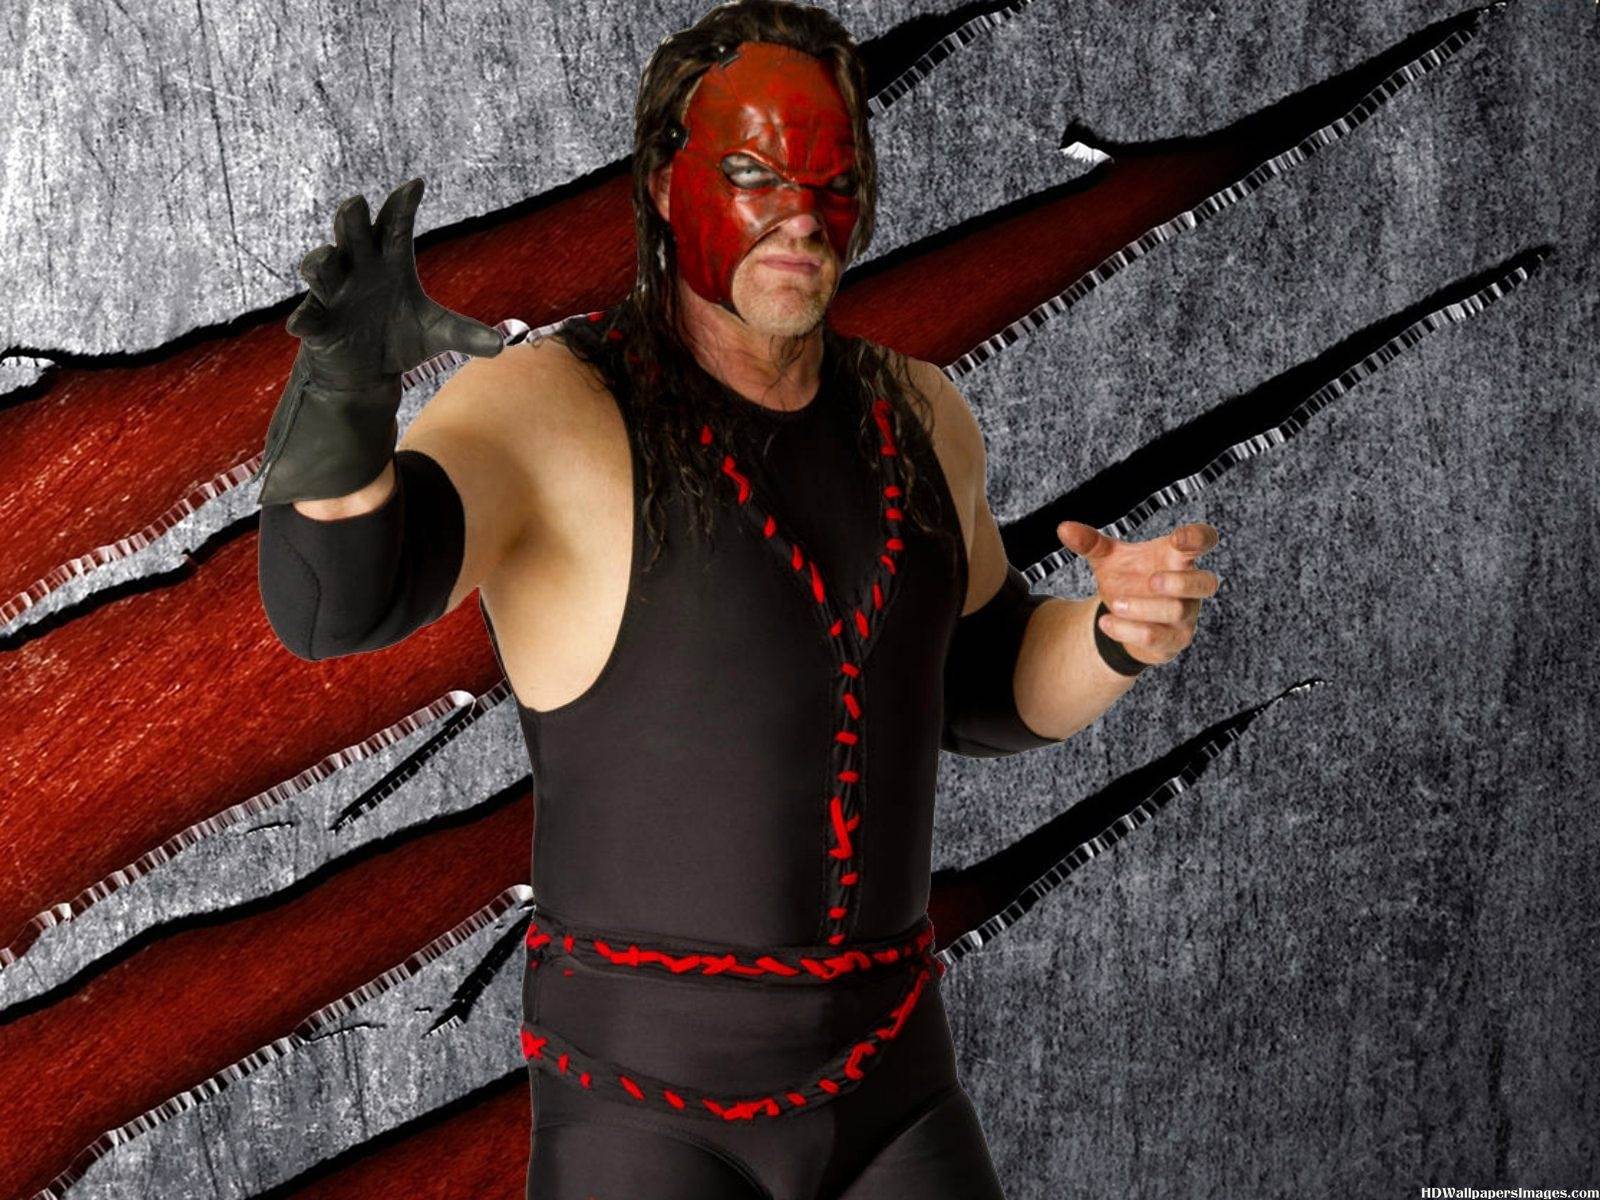 WWE HD Wallpaper Free: Kane HD Wallpaper Free Download 1280×960 WWE Kane Wallpaper. Adorable Wallpaper. Kane wwe, Wwe, Wwe superstars